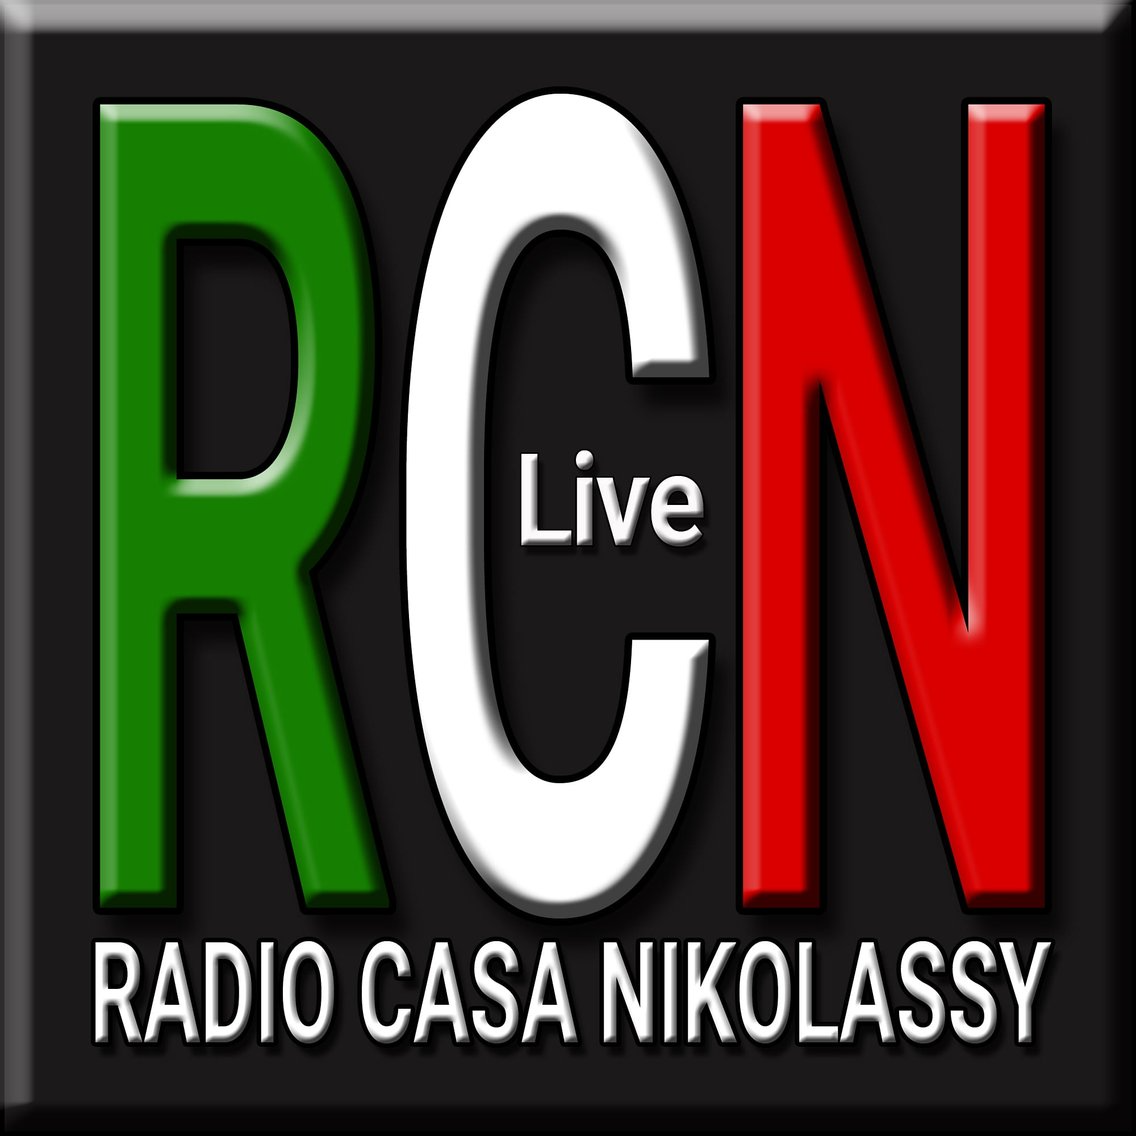 RADIO CASA NIKOLASSY